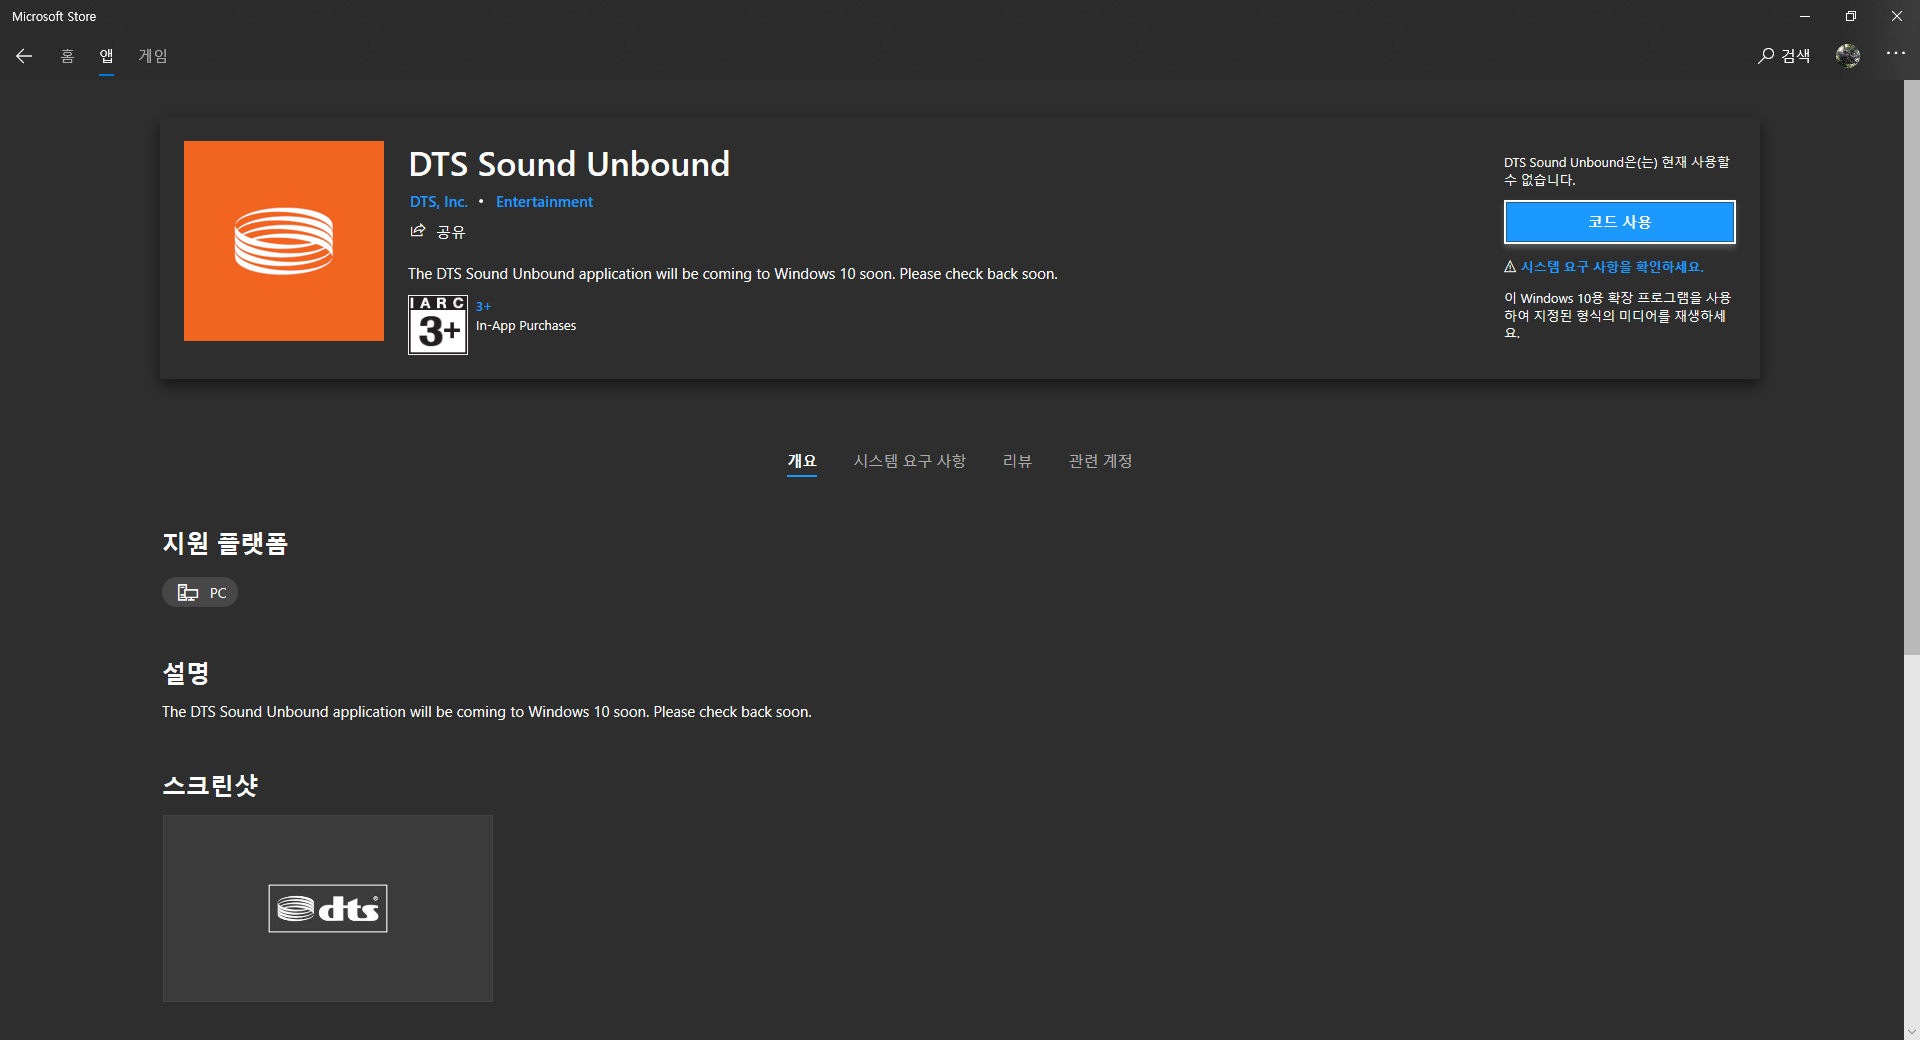 dts sound unbound windows 10 download crack